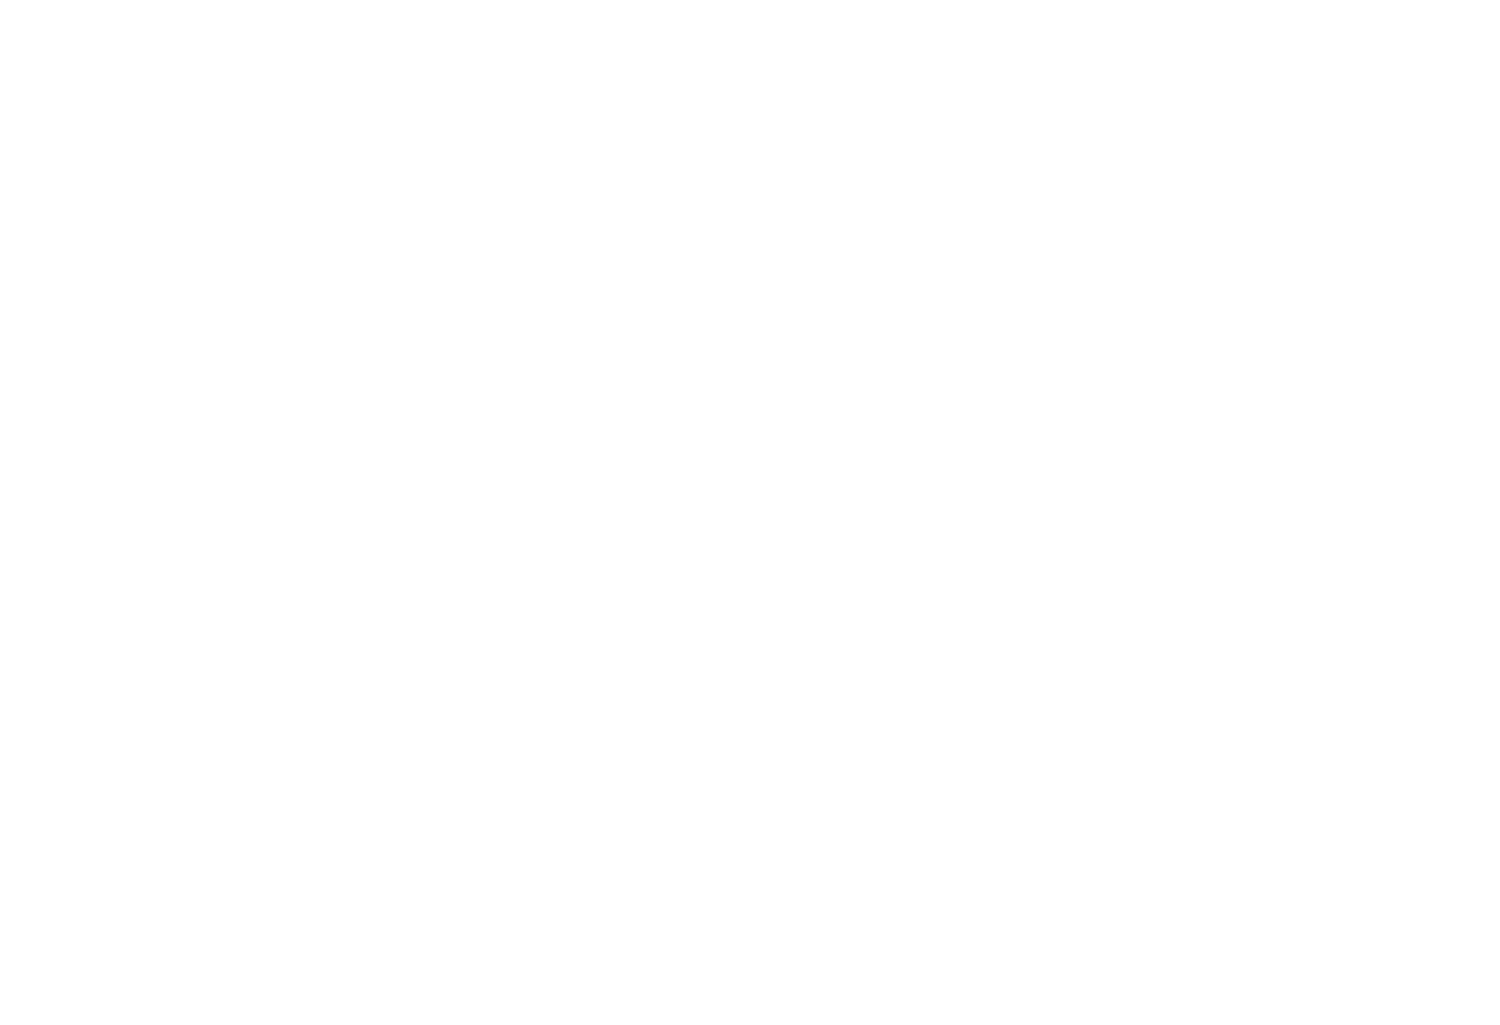 Barossa Shiraz Estate